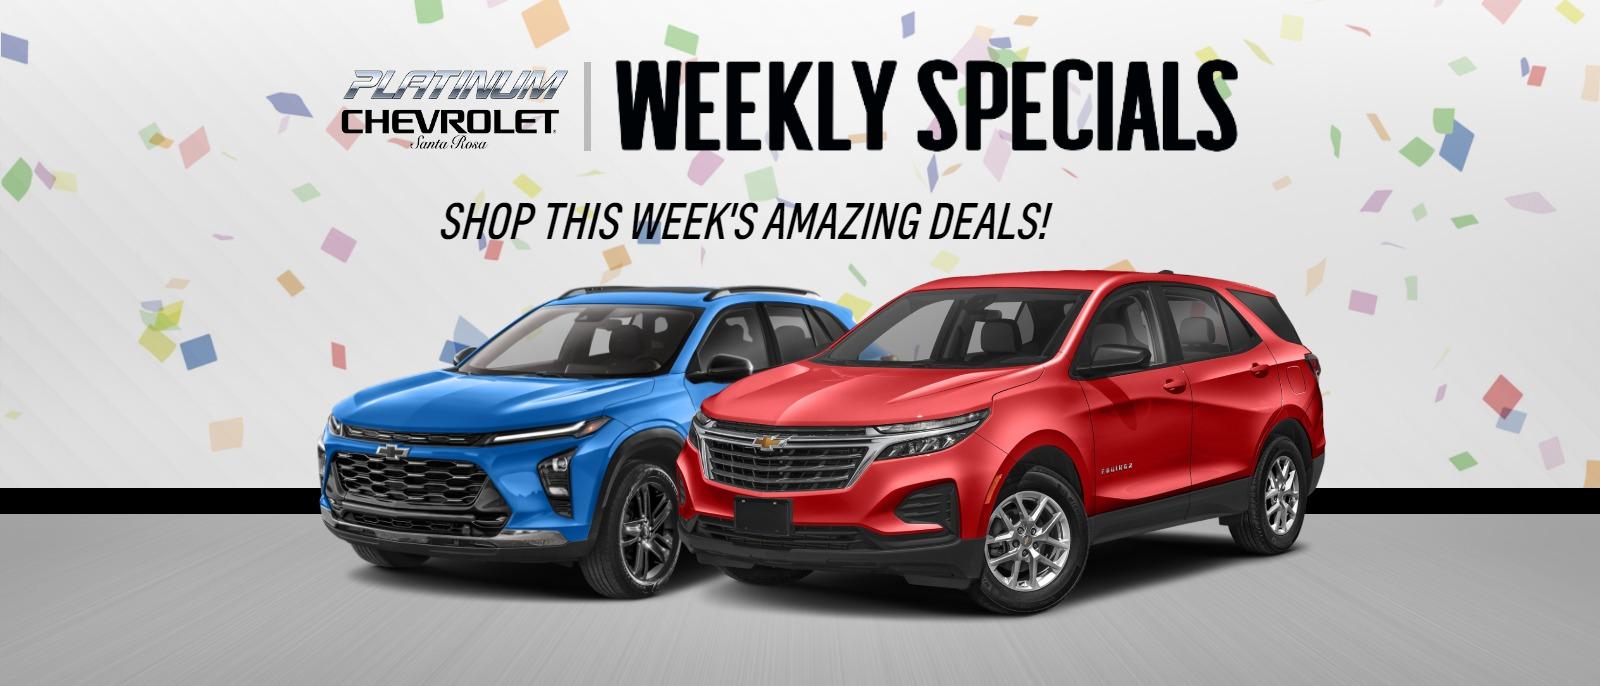 Platinum Chevrolet Weekly Specials